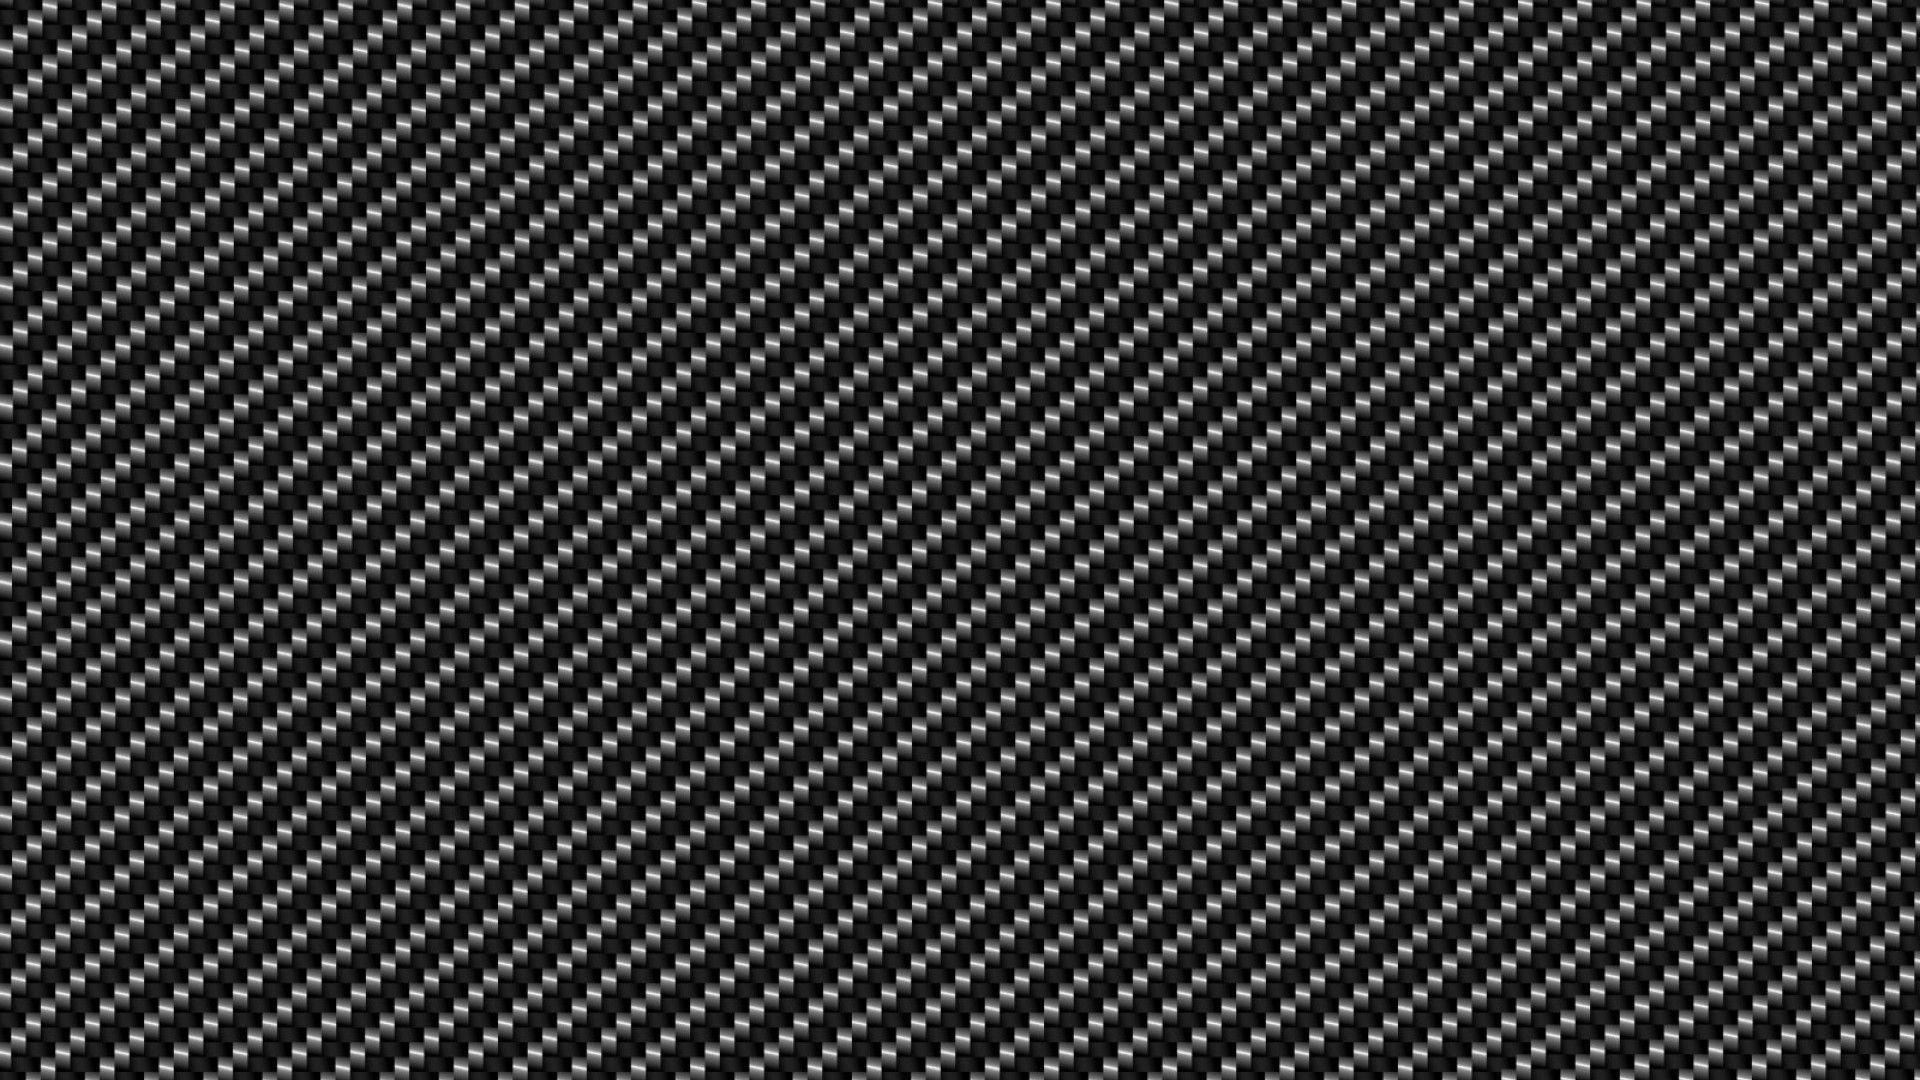 Carbon Fiber Wallpaper 1600x1066PX Wallpaper Carbon Fiber